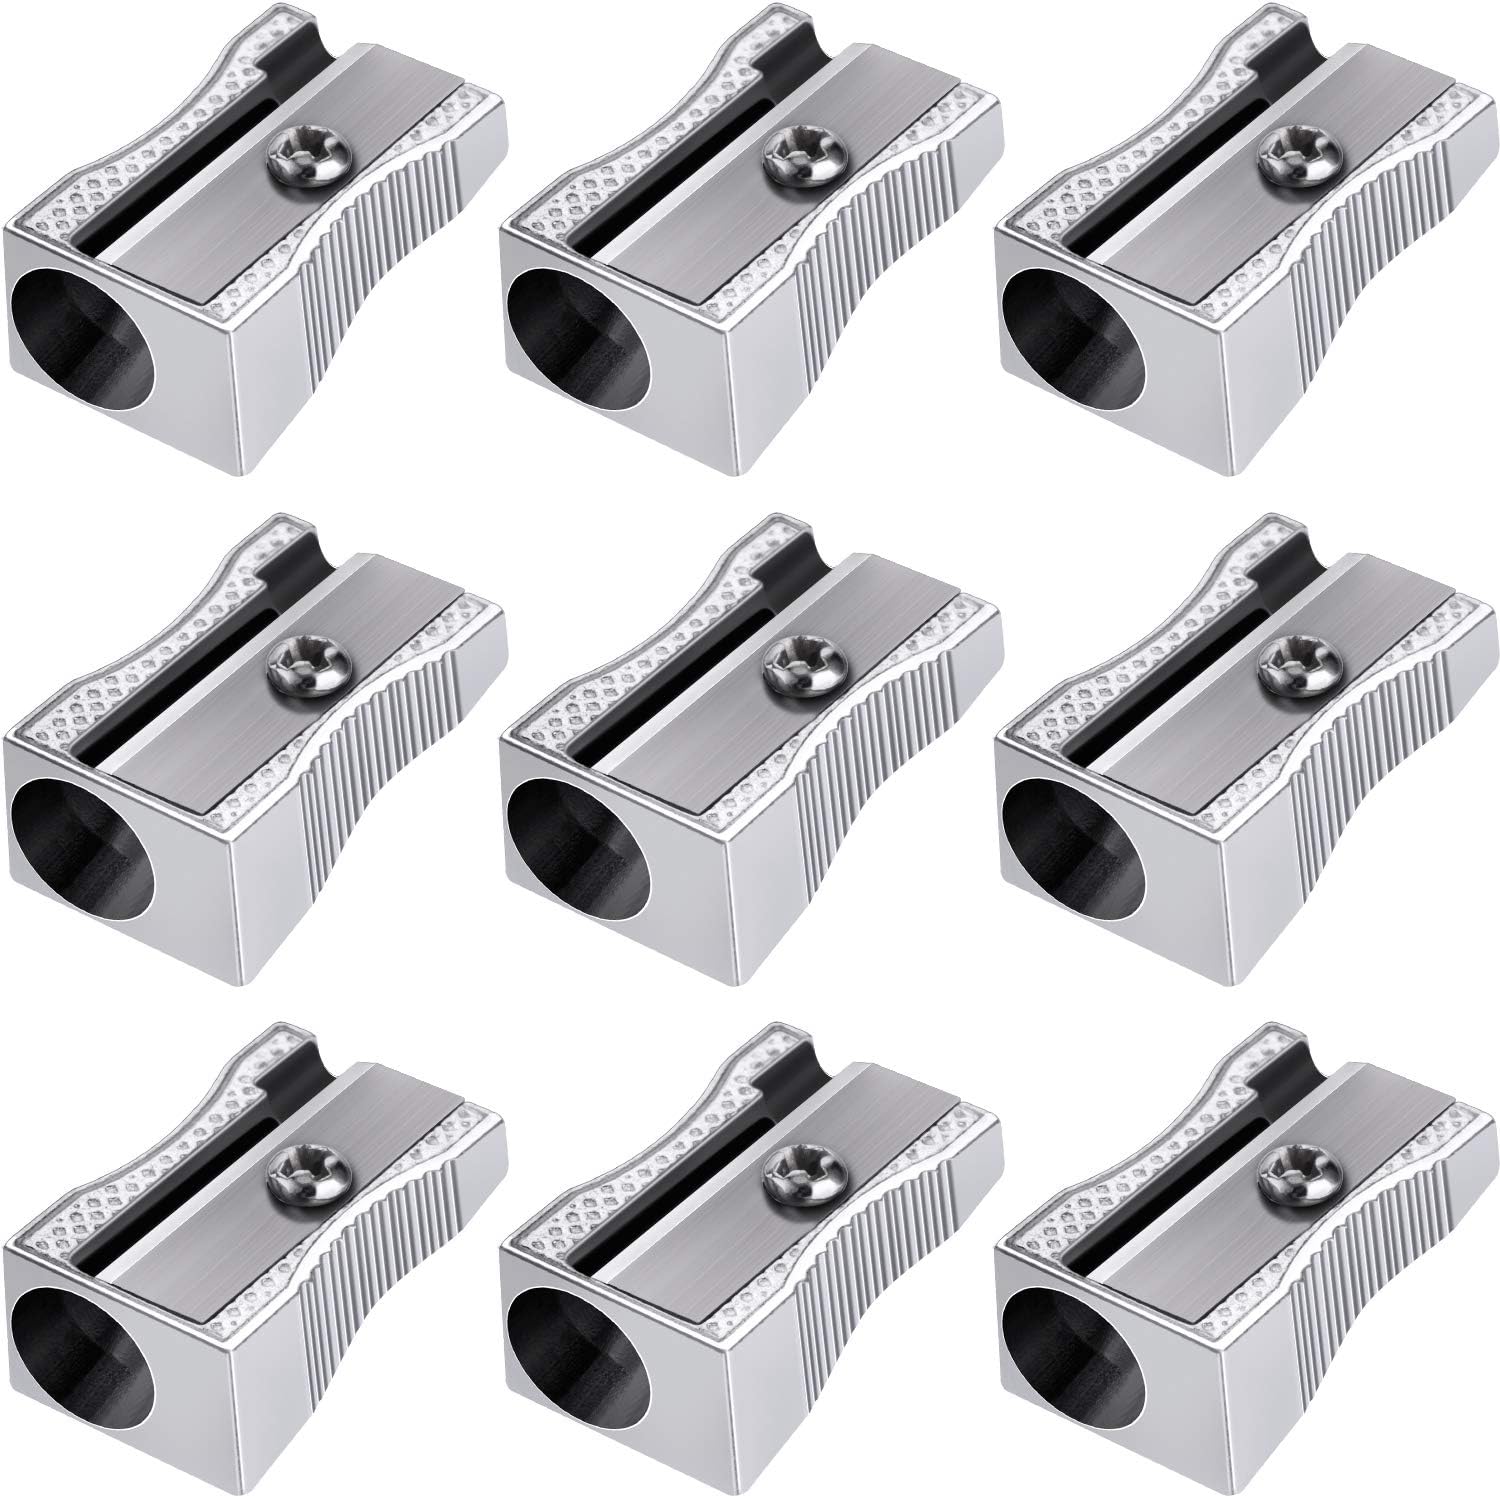 48 Pack Handheld Metal Mini Manual Pencil Sharpeners Silver